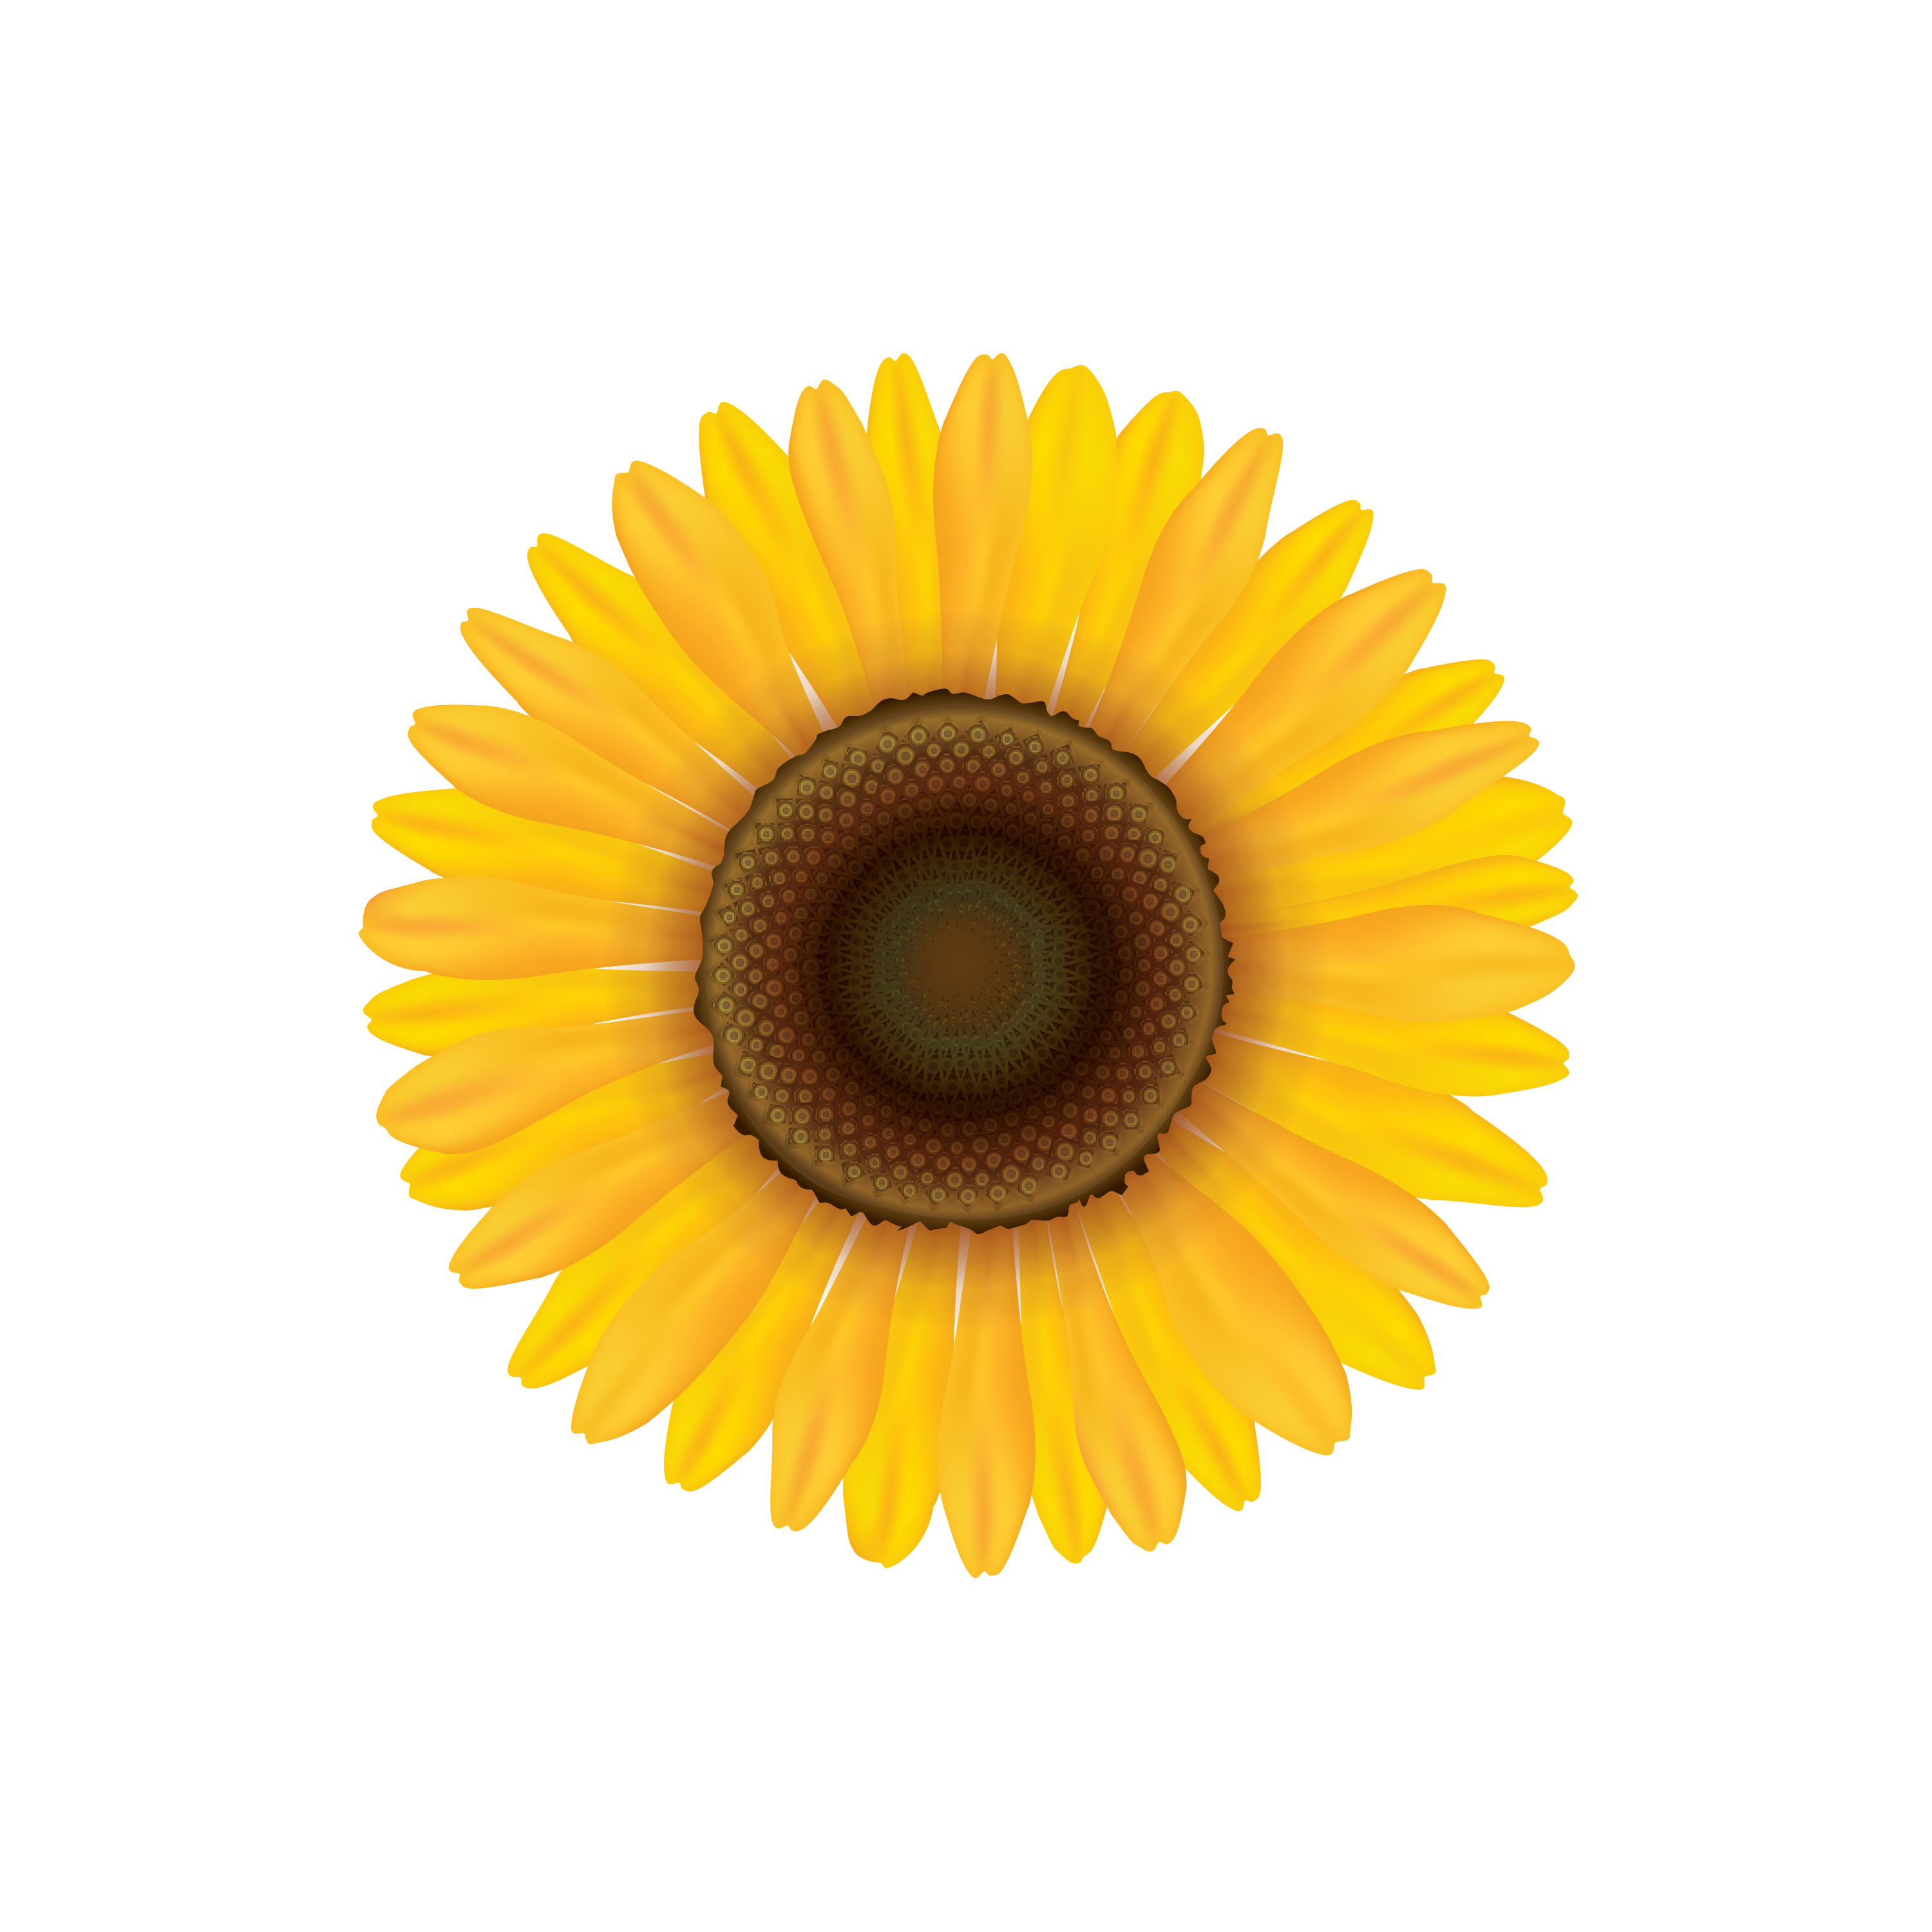 Sunflower. Summer flower isolated. Vecor illustration ...